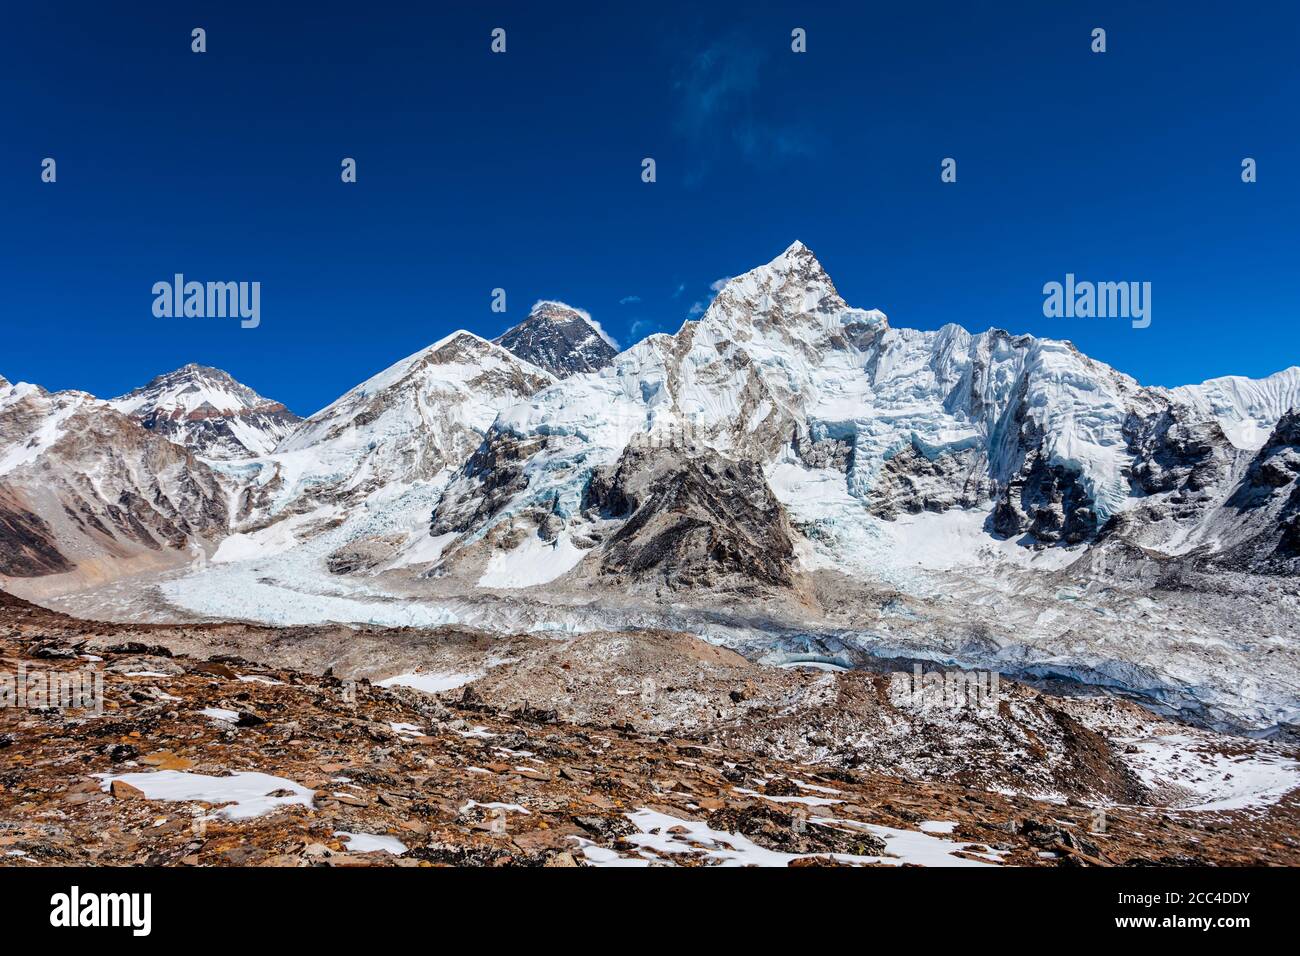 Everest, Nuptse and Lhotse mountains in Khumbu or Everest region in Himalaya, Nepal Stock Photo